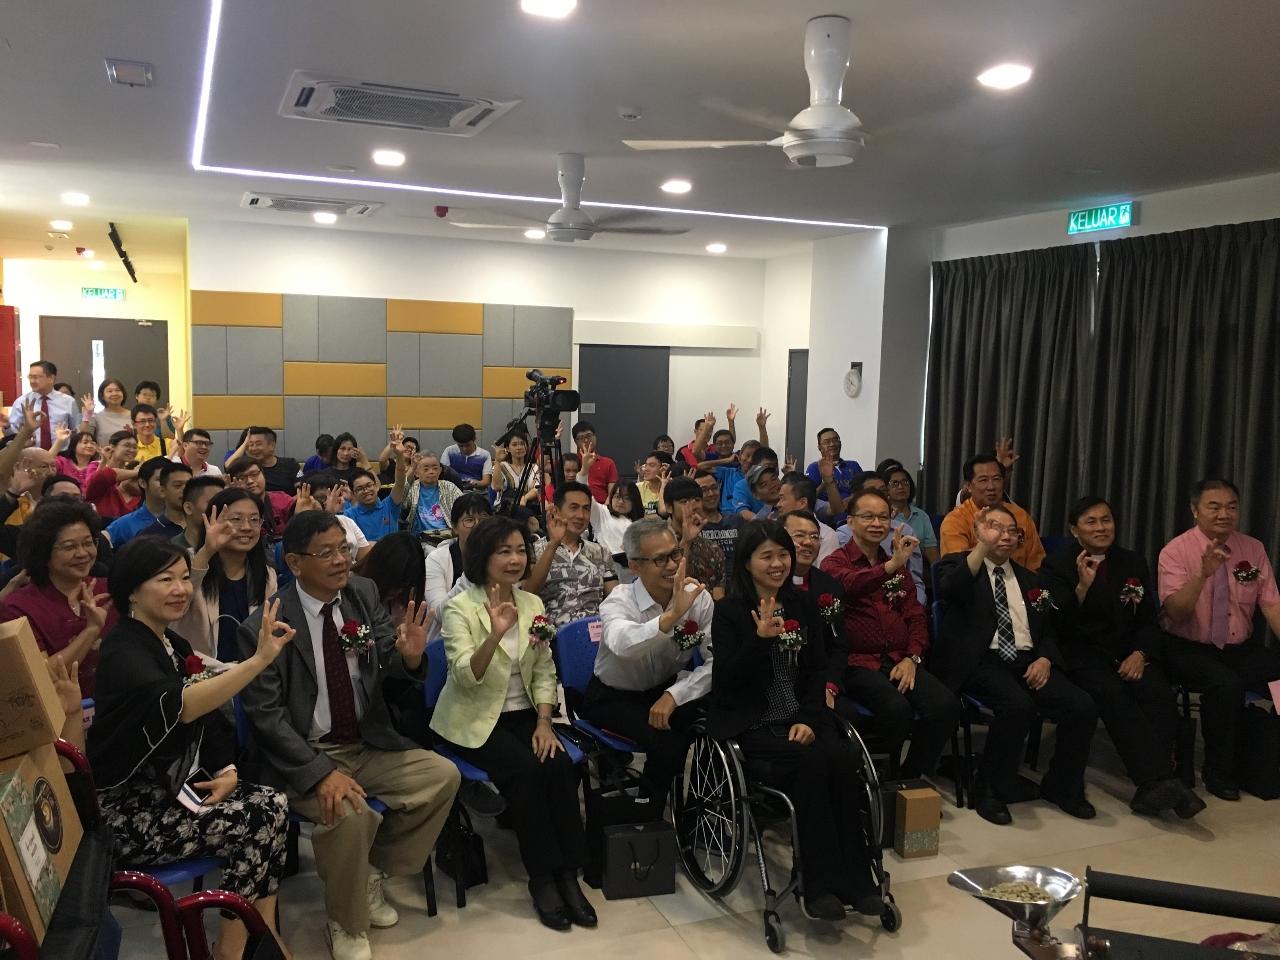 洪大使慧珠(前排右8)出席美門殘障關懷基金會特約咖啡工作坊開幕典禮與全體人員合影。